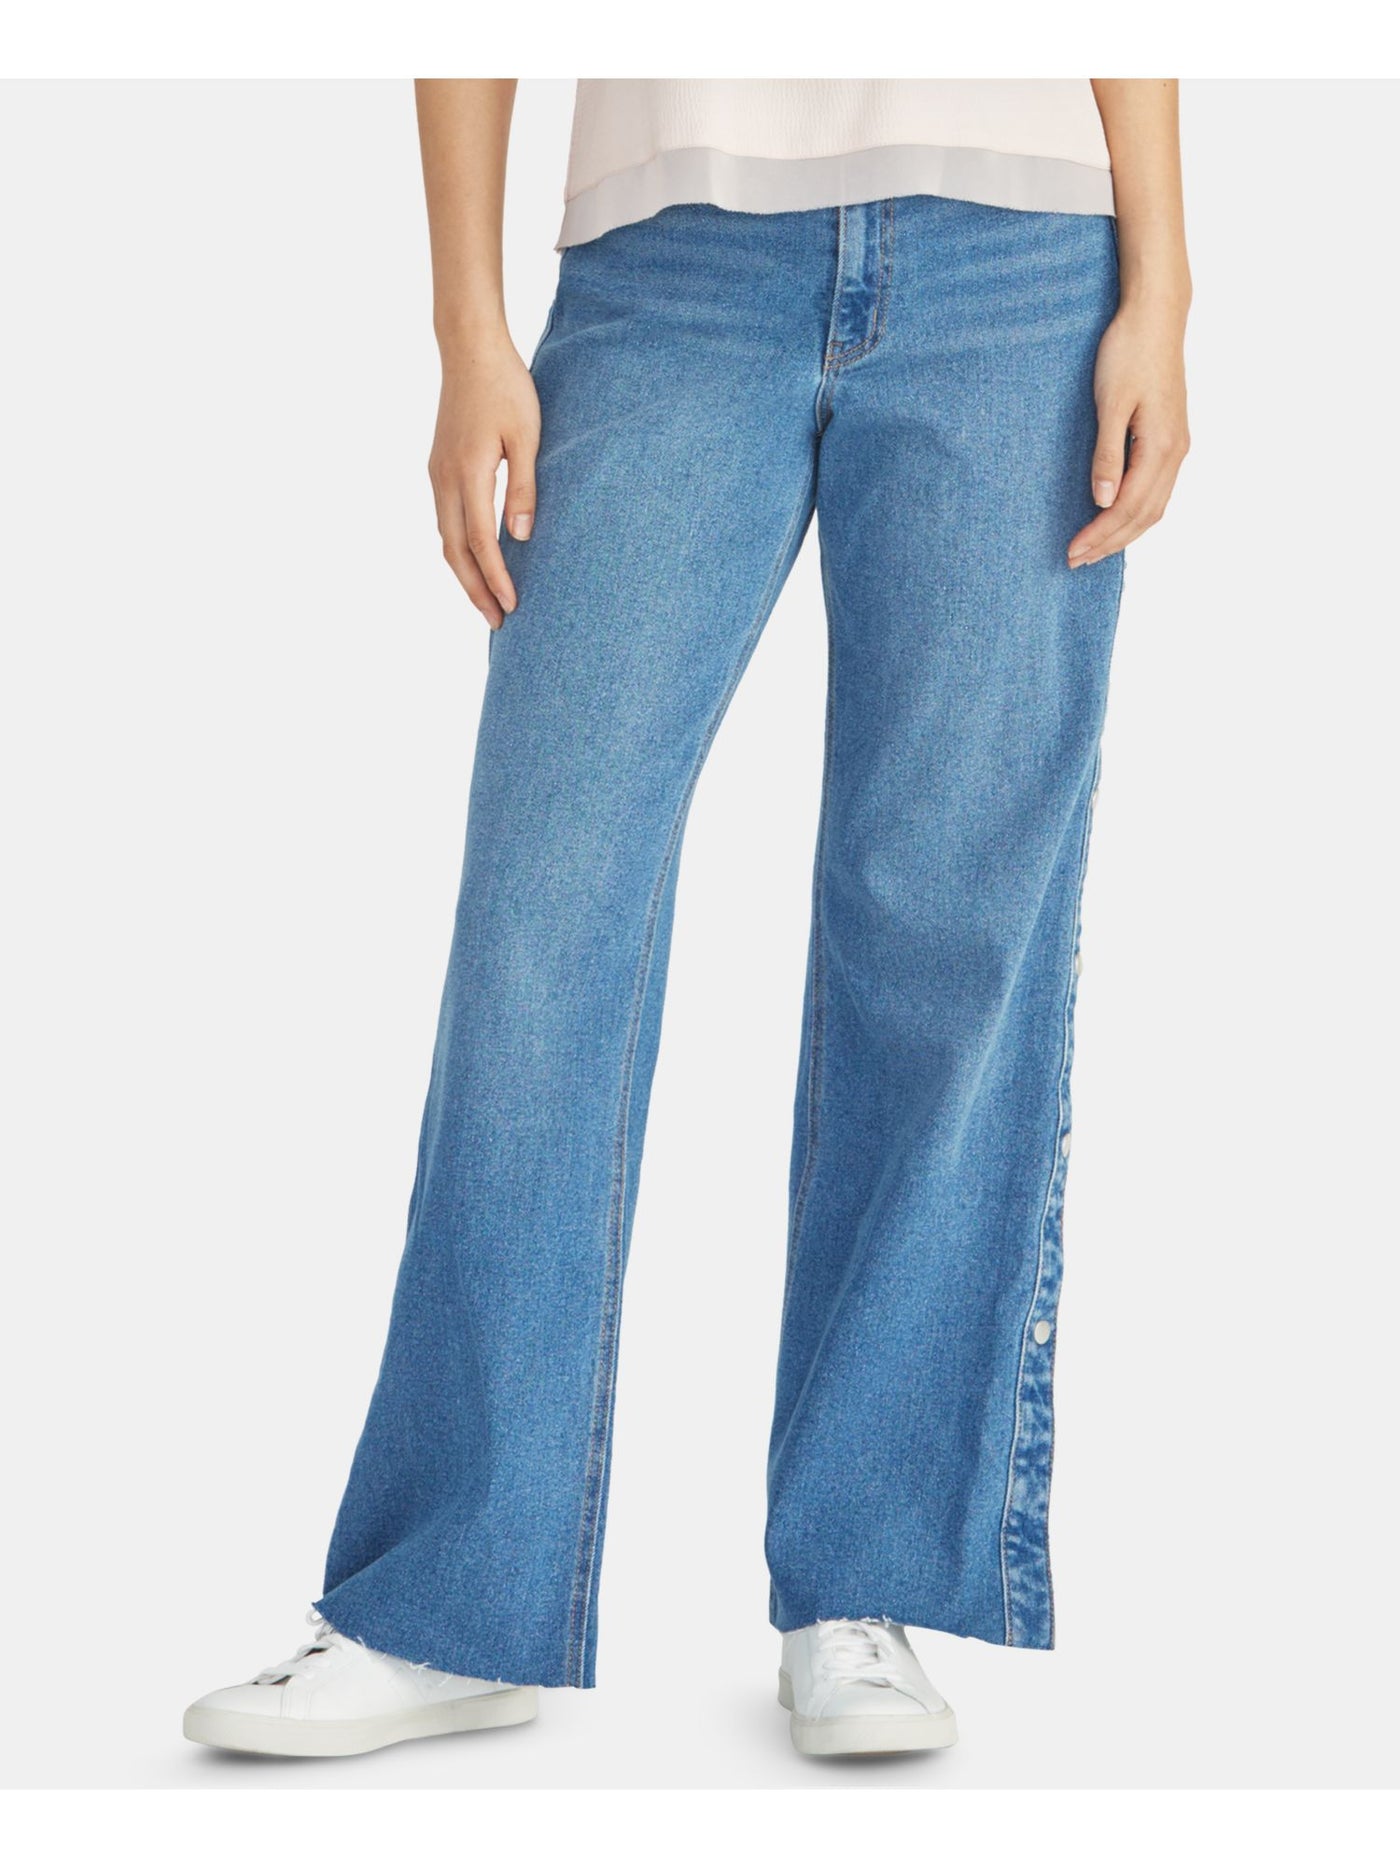 RACHEL ROY Womens Blue Boot Cut Jeans 25 Waist